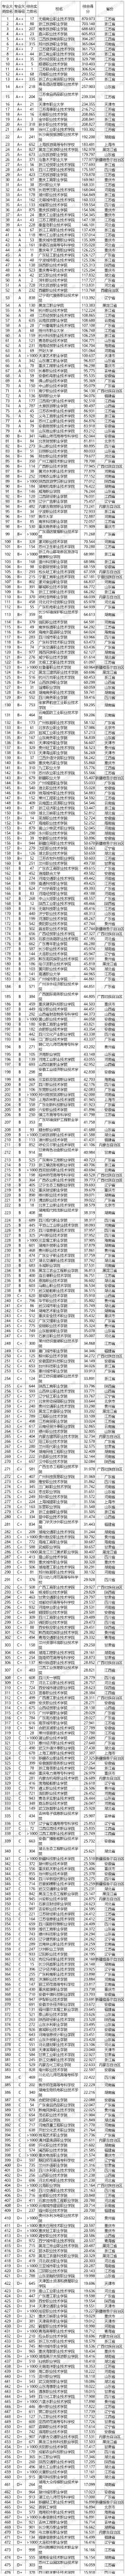 武书连2020中国高职高专专业大类排行榜